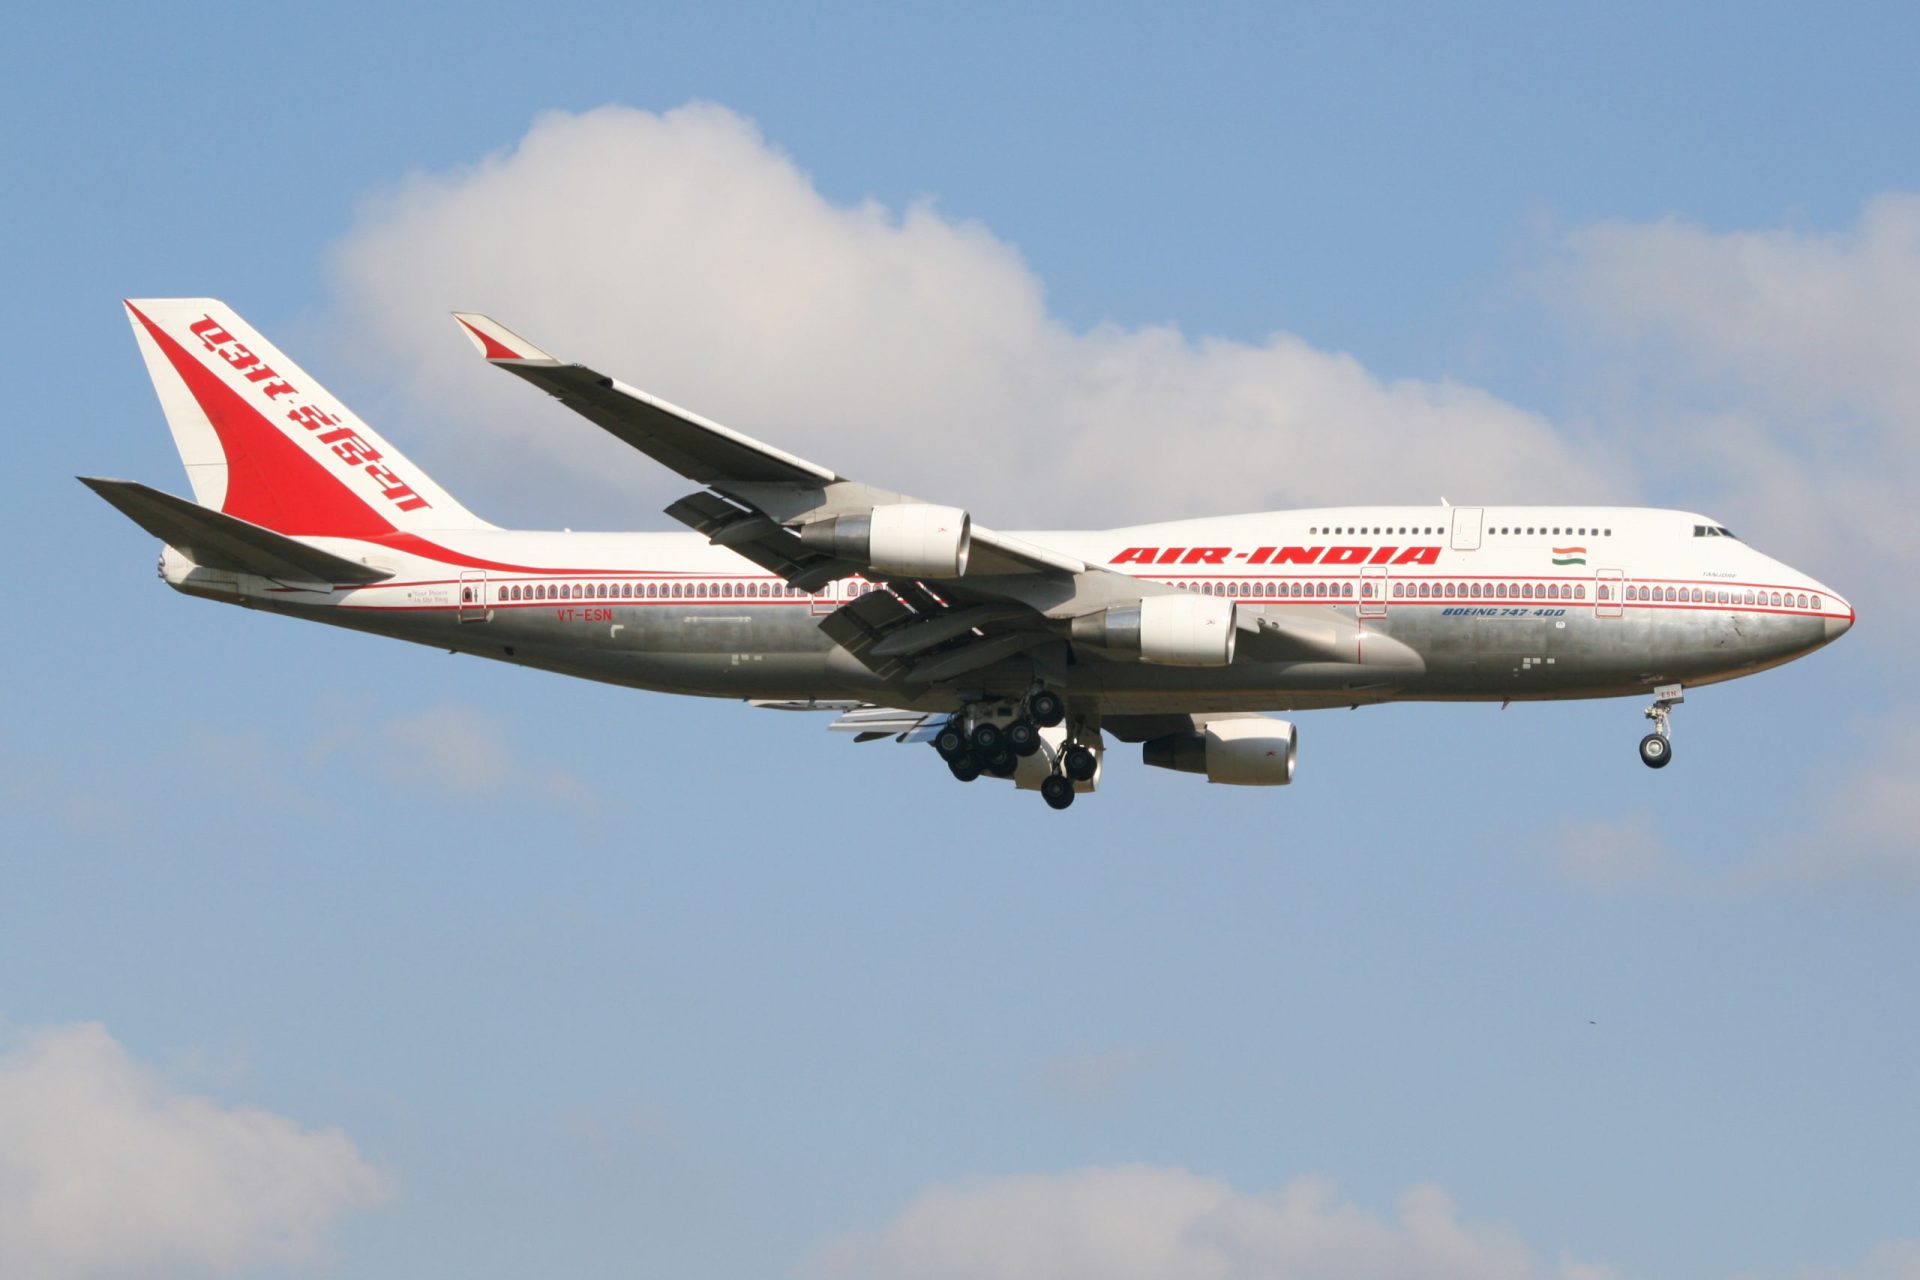 Ameaça de bomba em voo da Air India obriga a aterragem de emergência em Londres